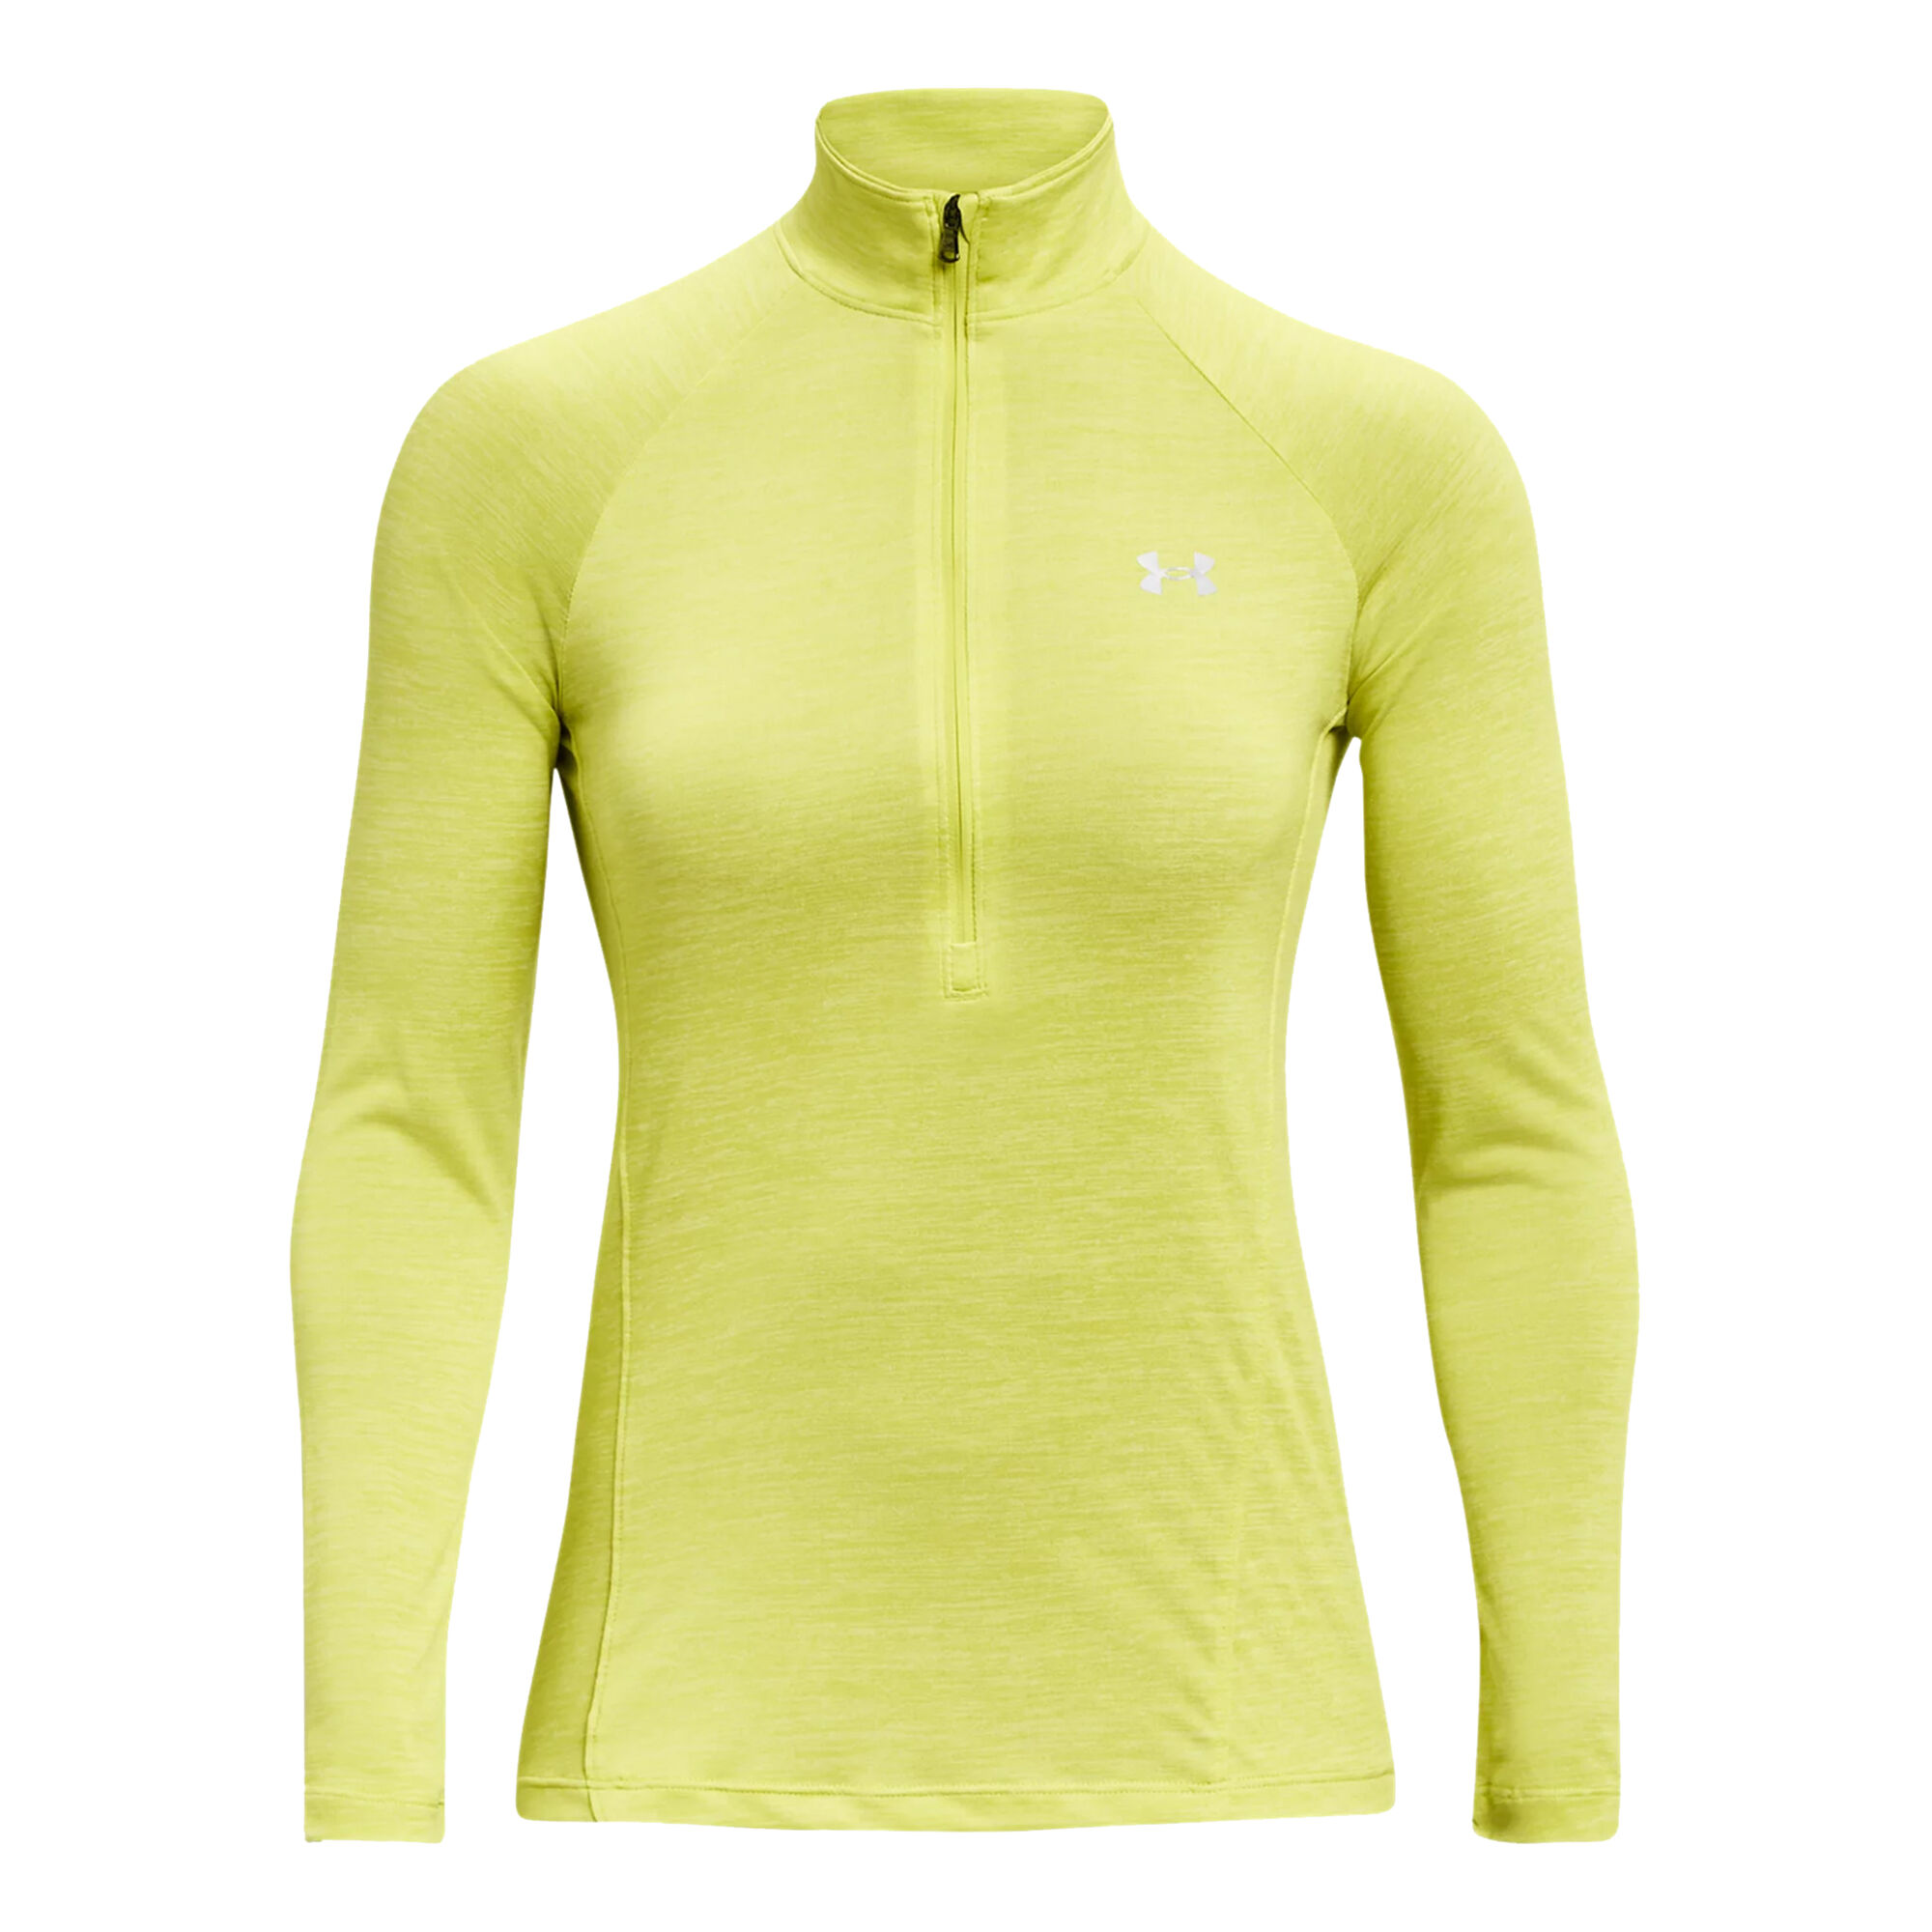 Buy Under Armour Tech Half-Zip Twist Long Sleeve Women Neon Yellow online